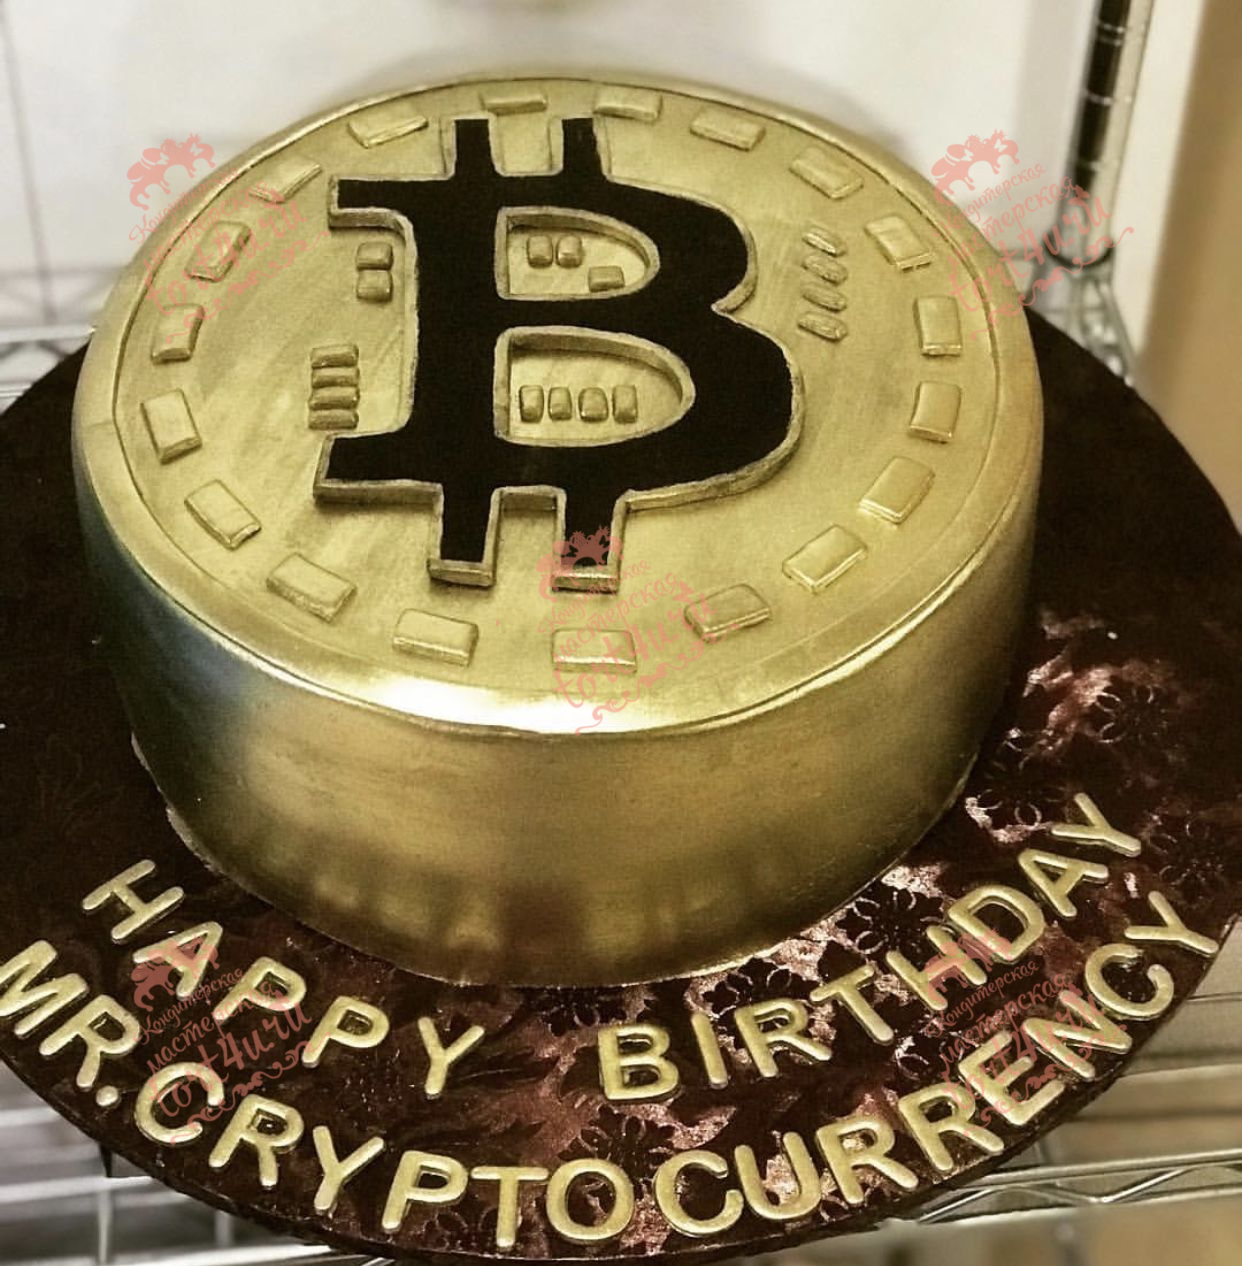 Happy birthday bitcoin cake idea